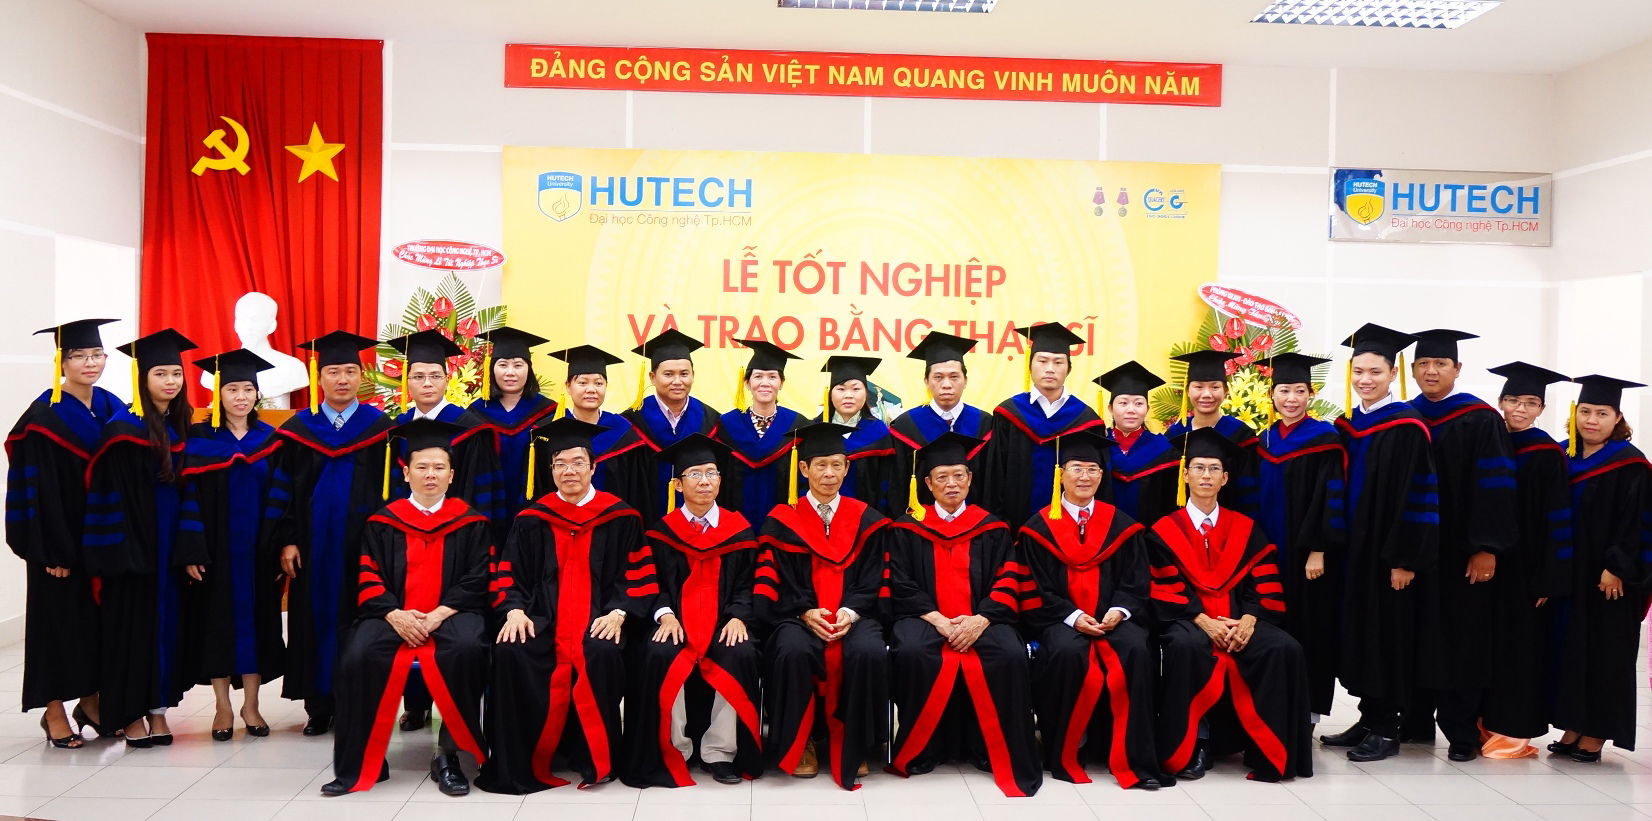 HUTECH tuyển sinh đào tạo trình độ Thạc sỹ - Đợt 1 năm 2015 153